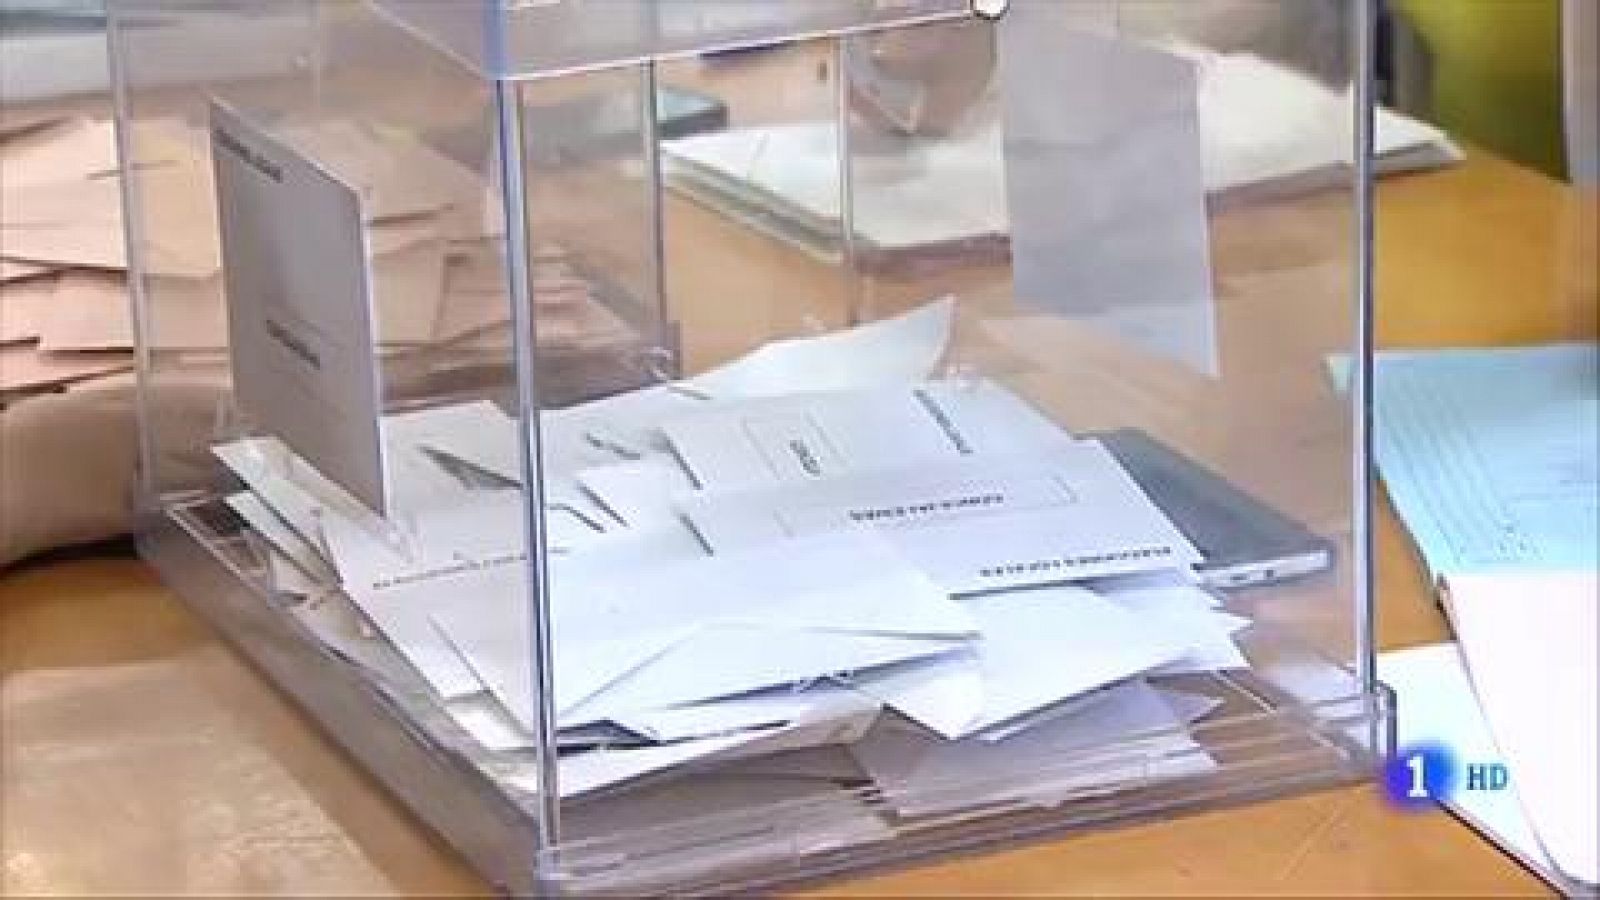 Elecciones autonómicas y municipales 26M | Discusión entre ERC y Vox por una camiseta, confusión con las urnas y otras anécdotas